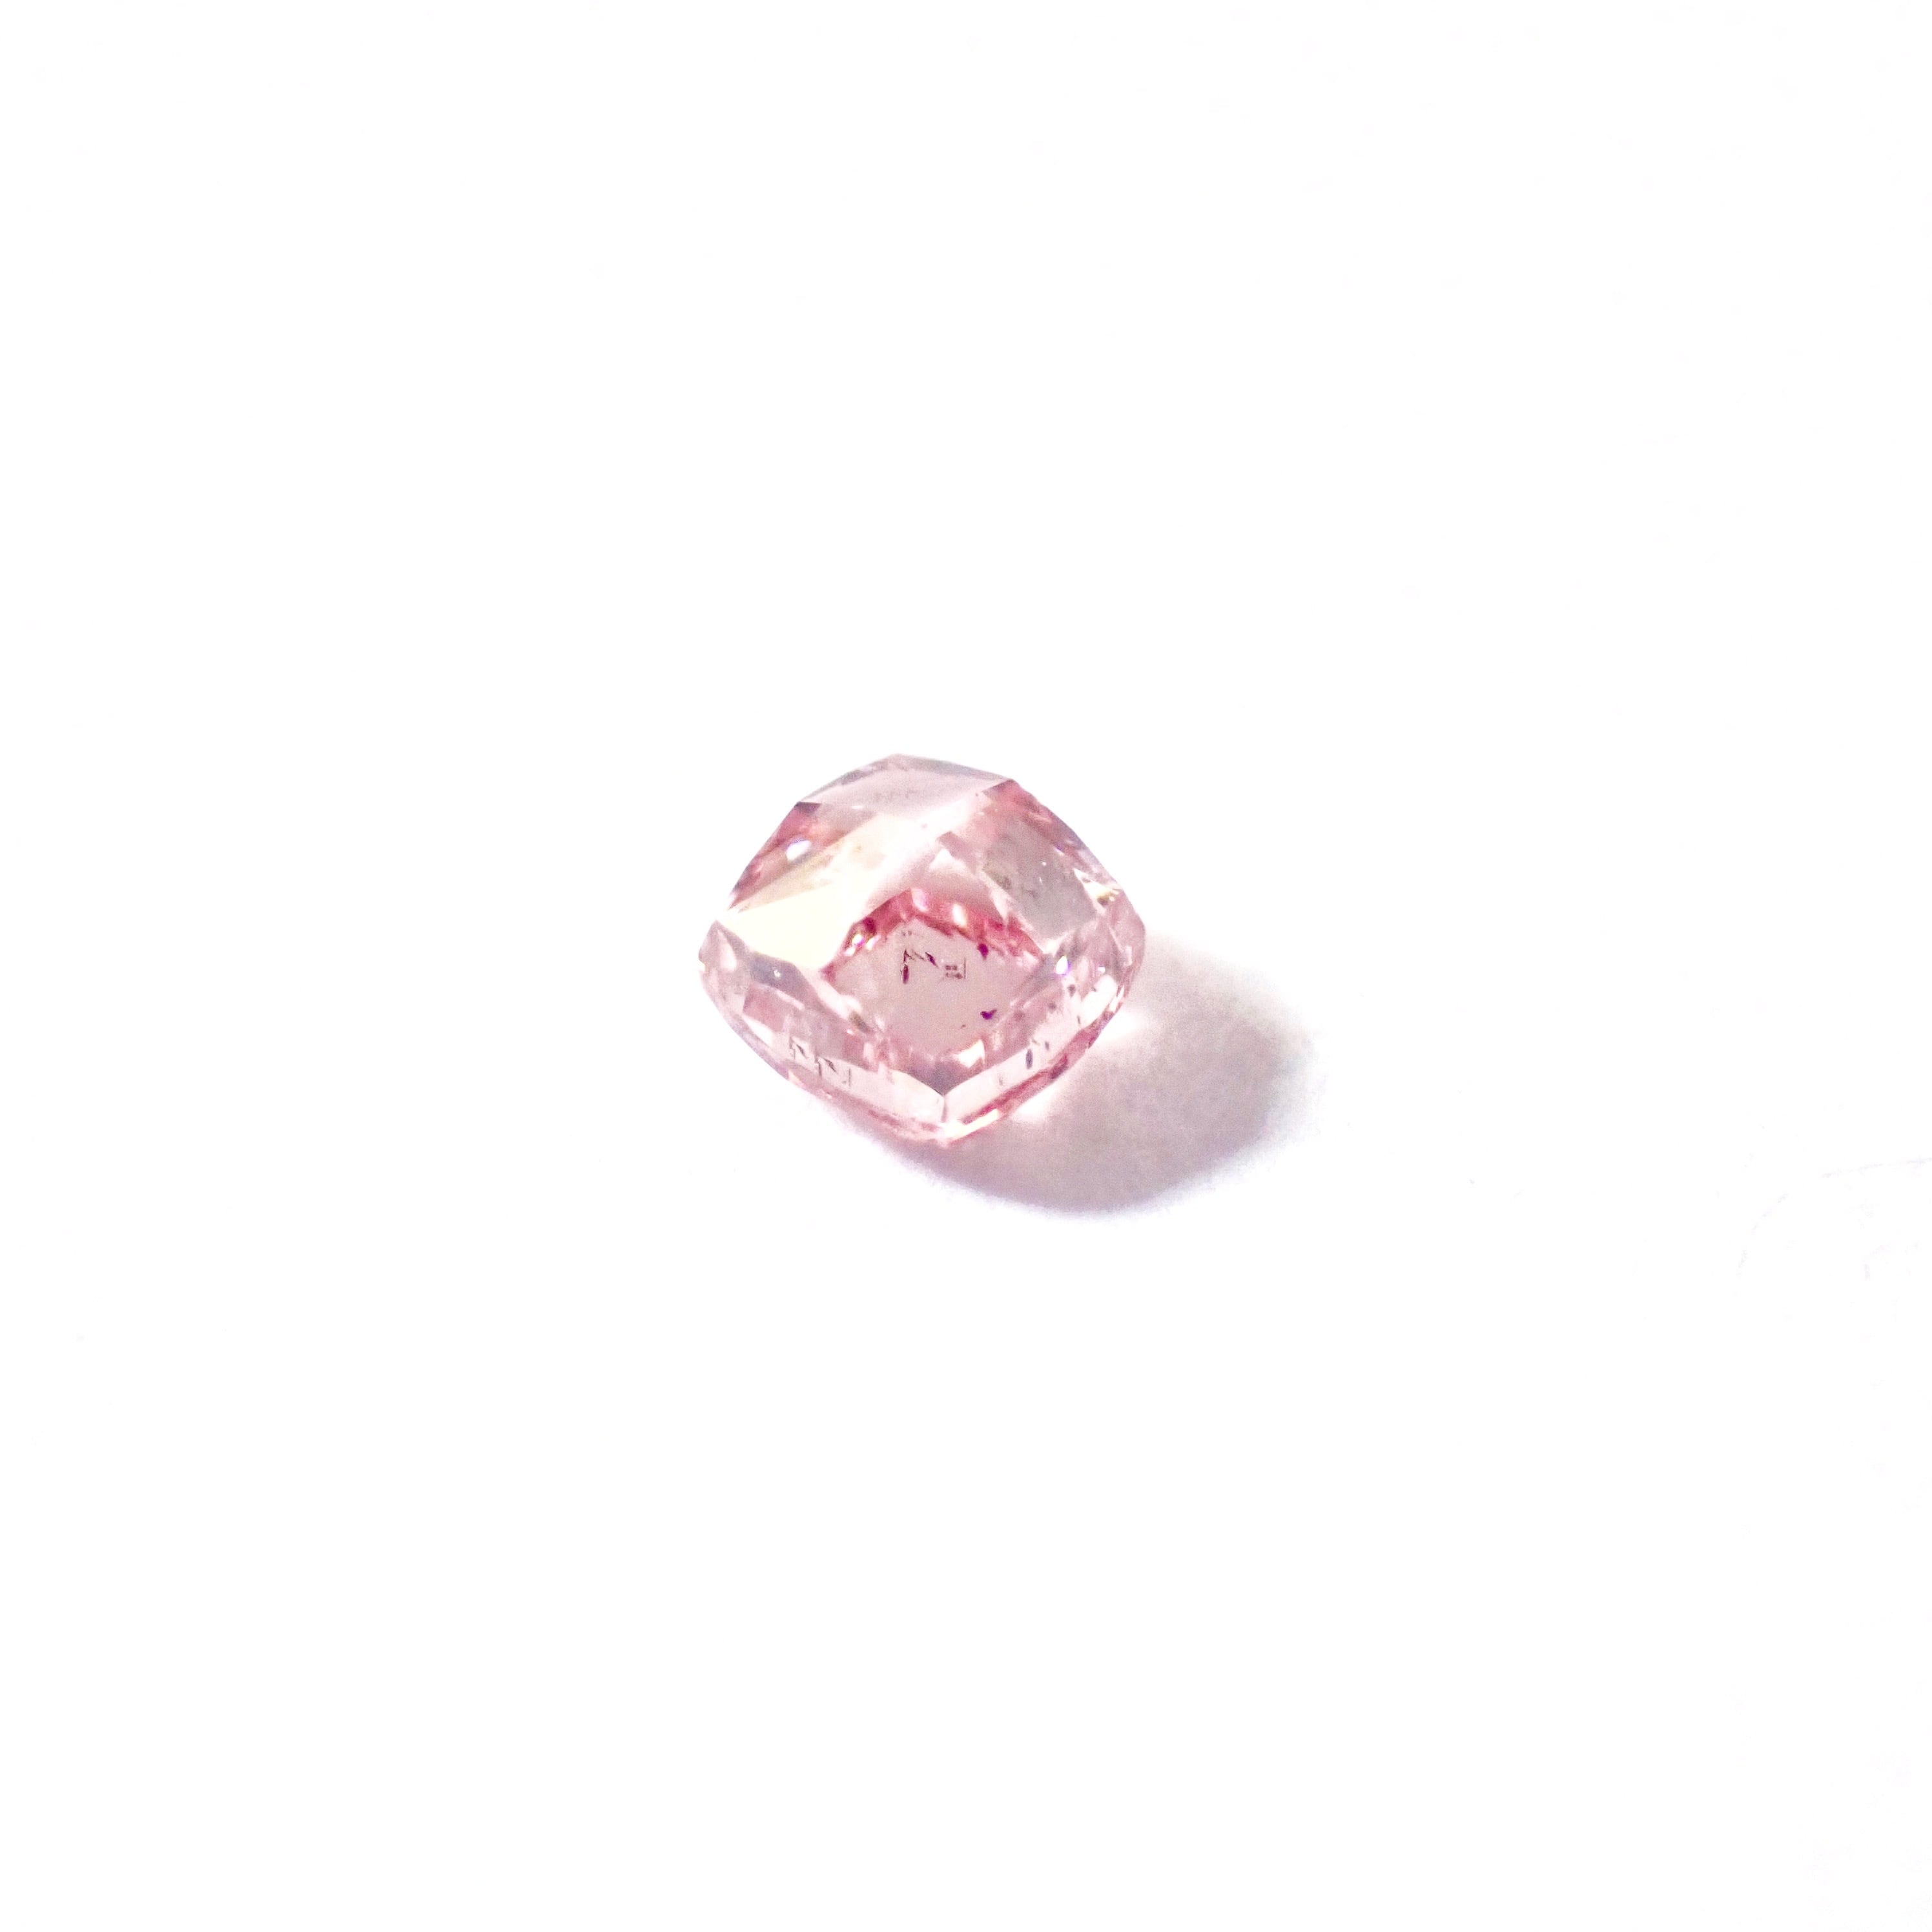 ソーティング付★ Fancy Intense Pink ルース 裸石